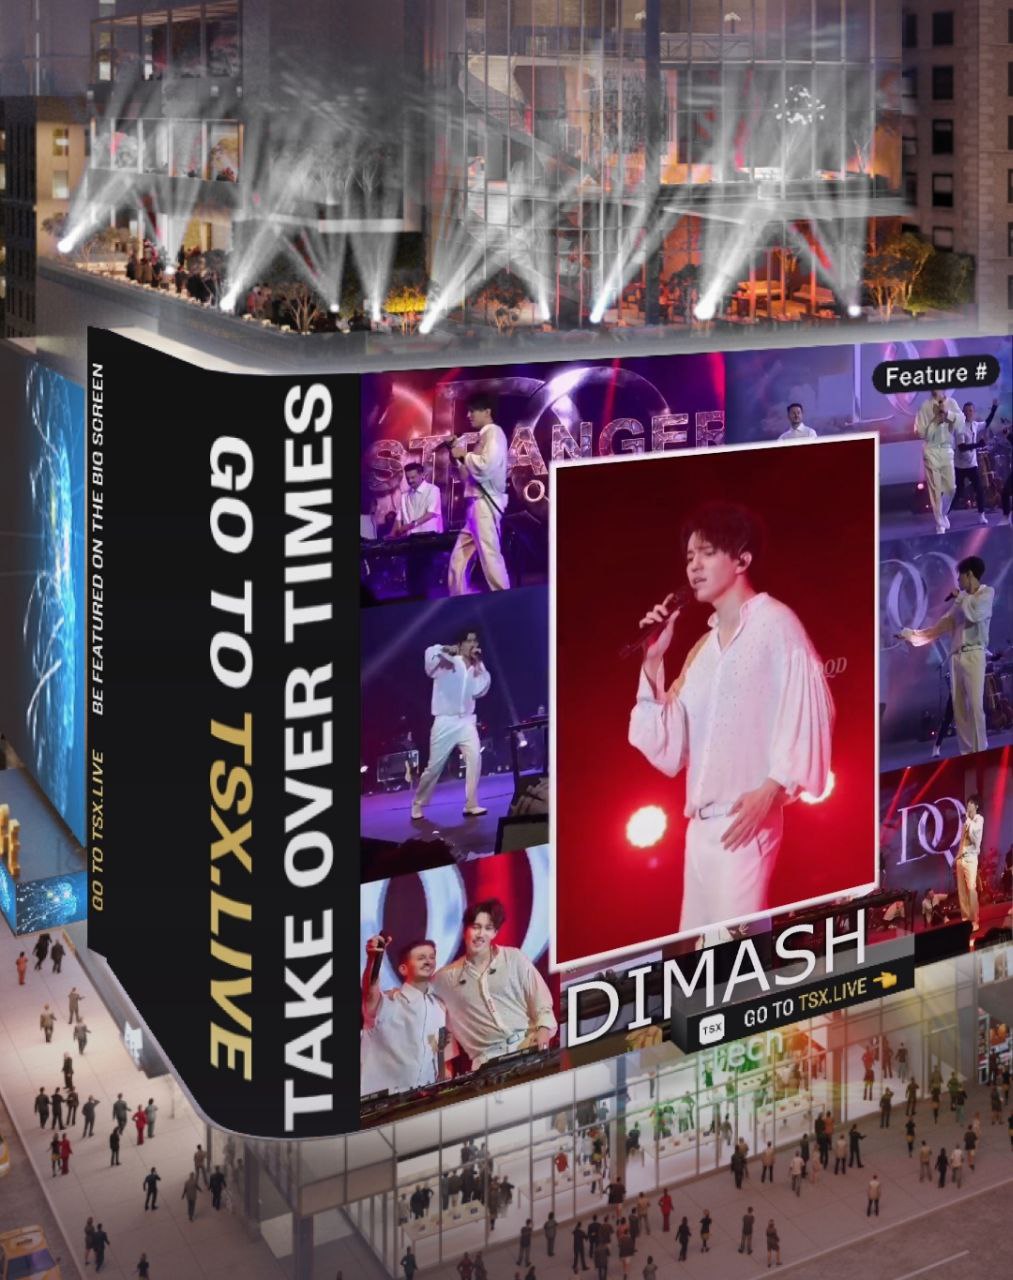 Димаш в пятый раз представлен на Таймс-сквере в Нью-Йорке